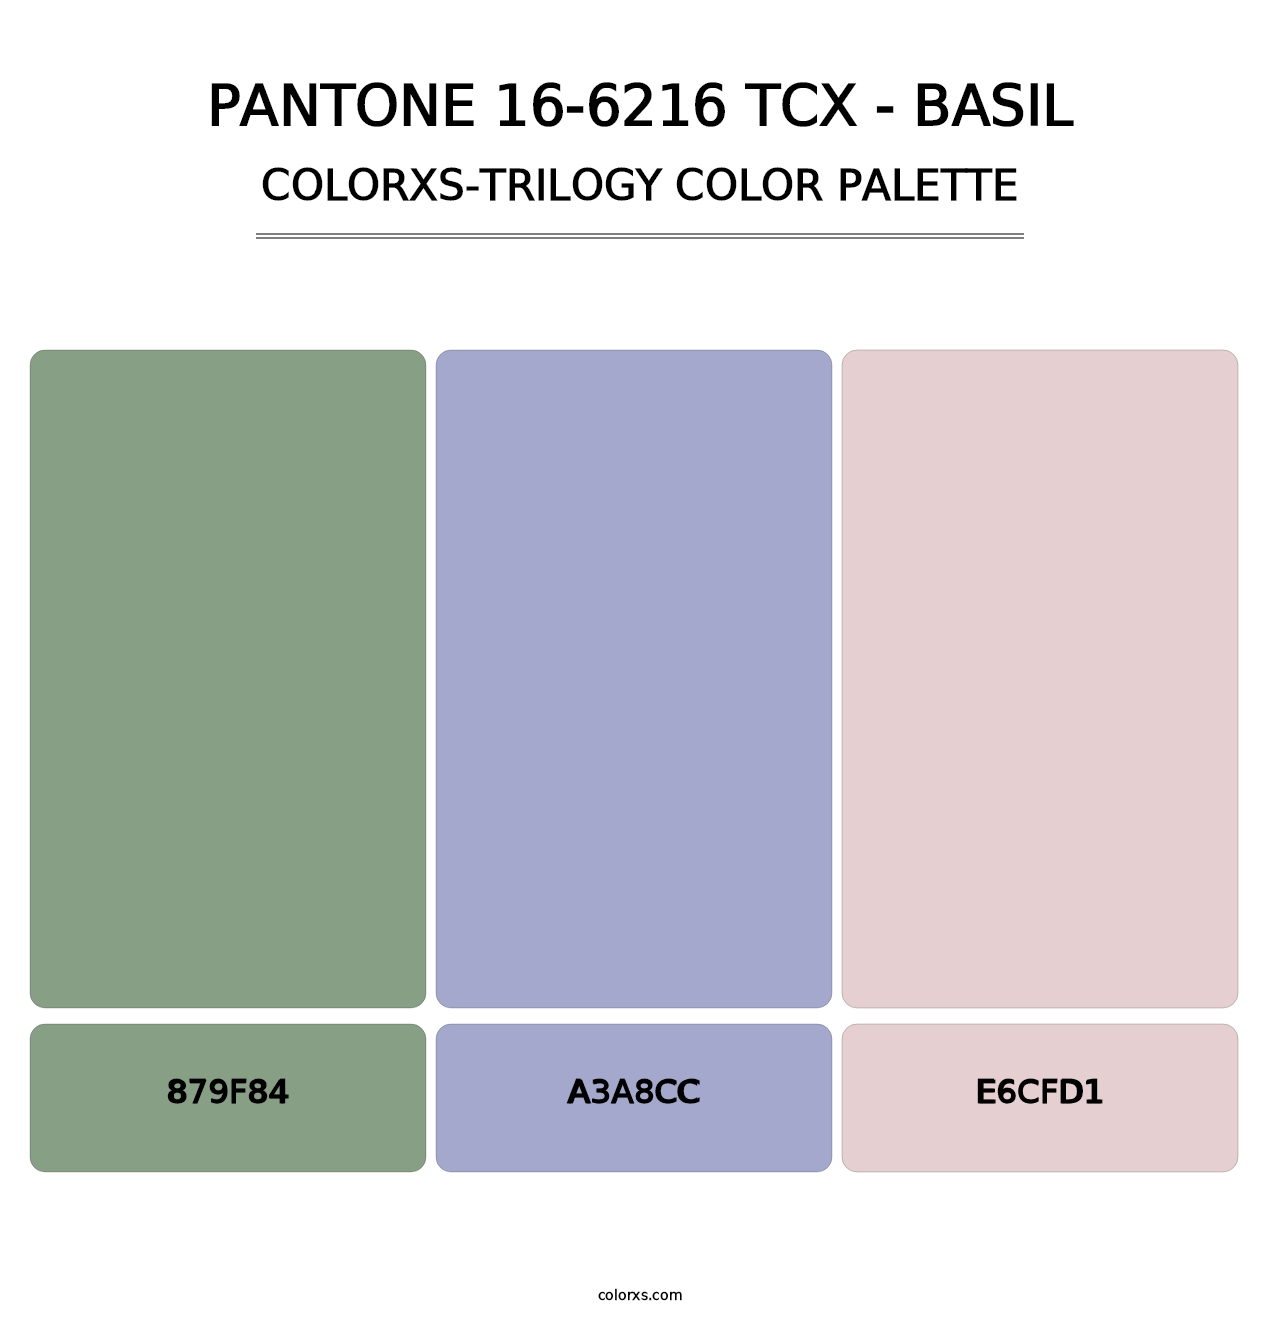 PANTONE 16-6216 TCX - Basil - Colorxs Trilogy Palette